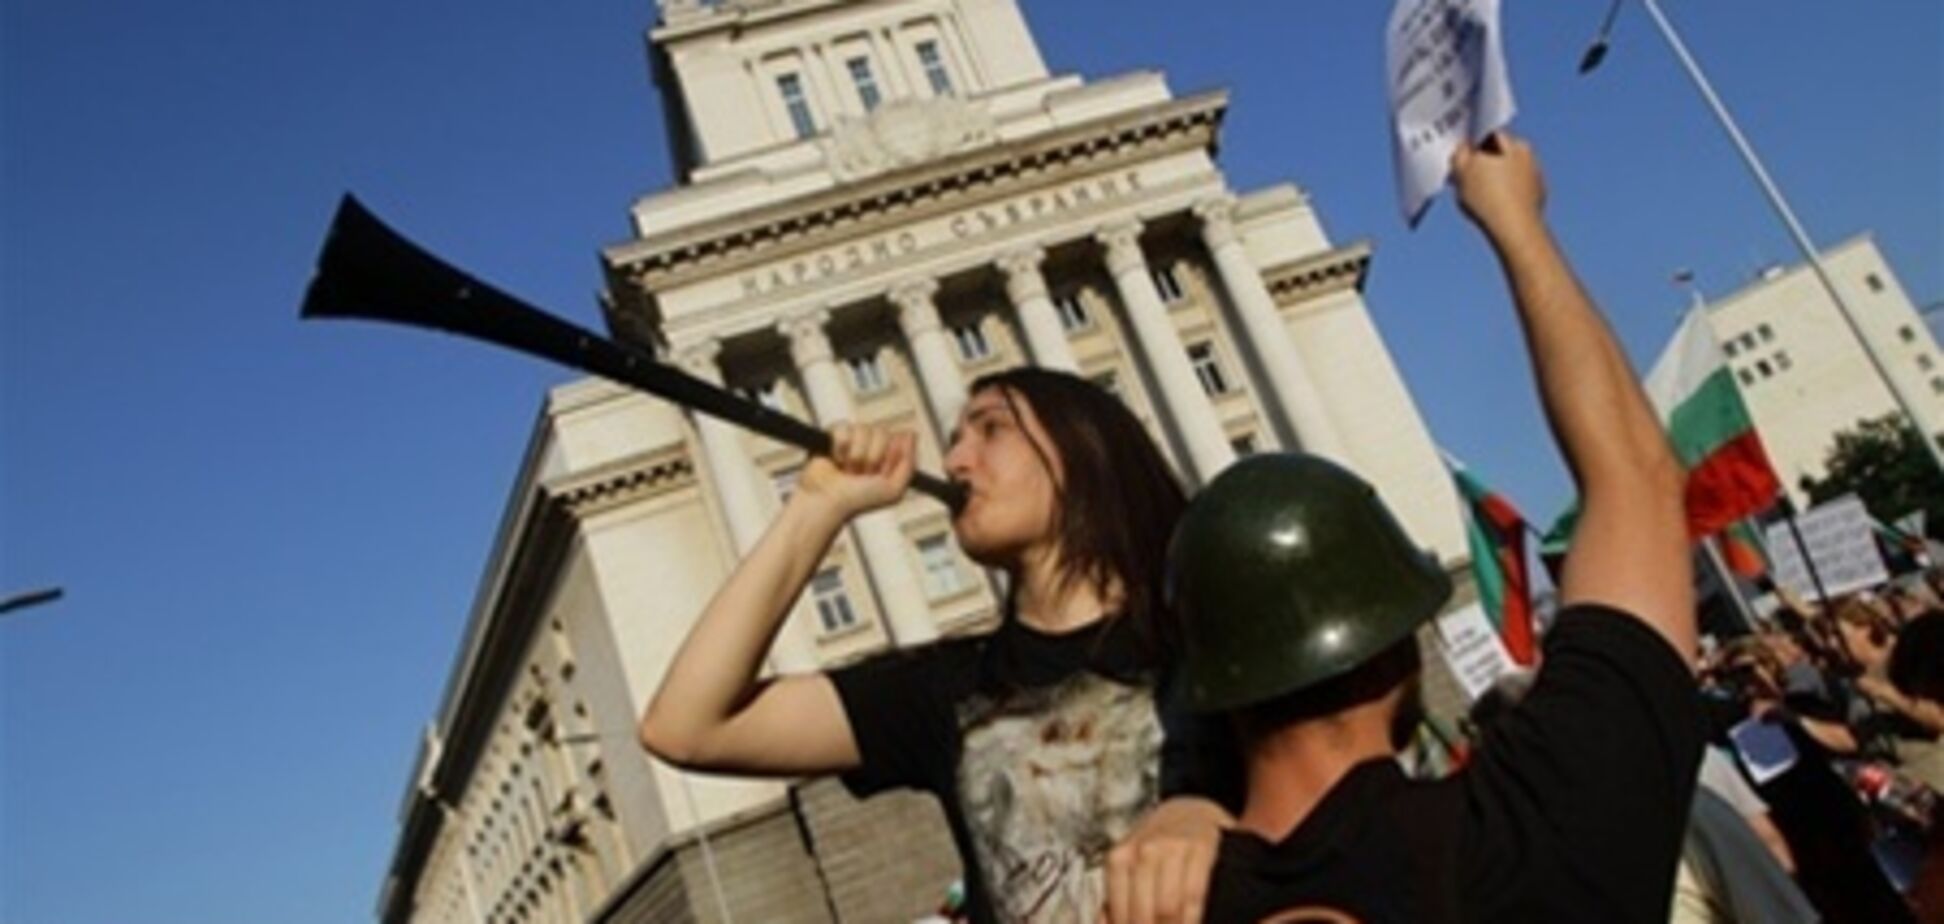 В столкновениях в столице Болгарии ранения получили восемь человек